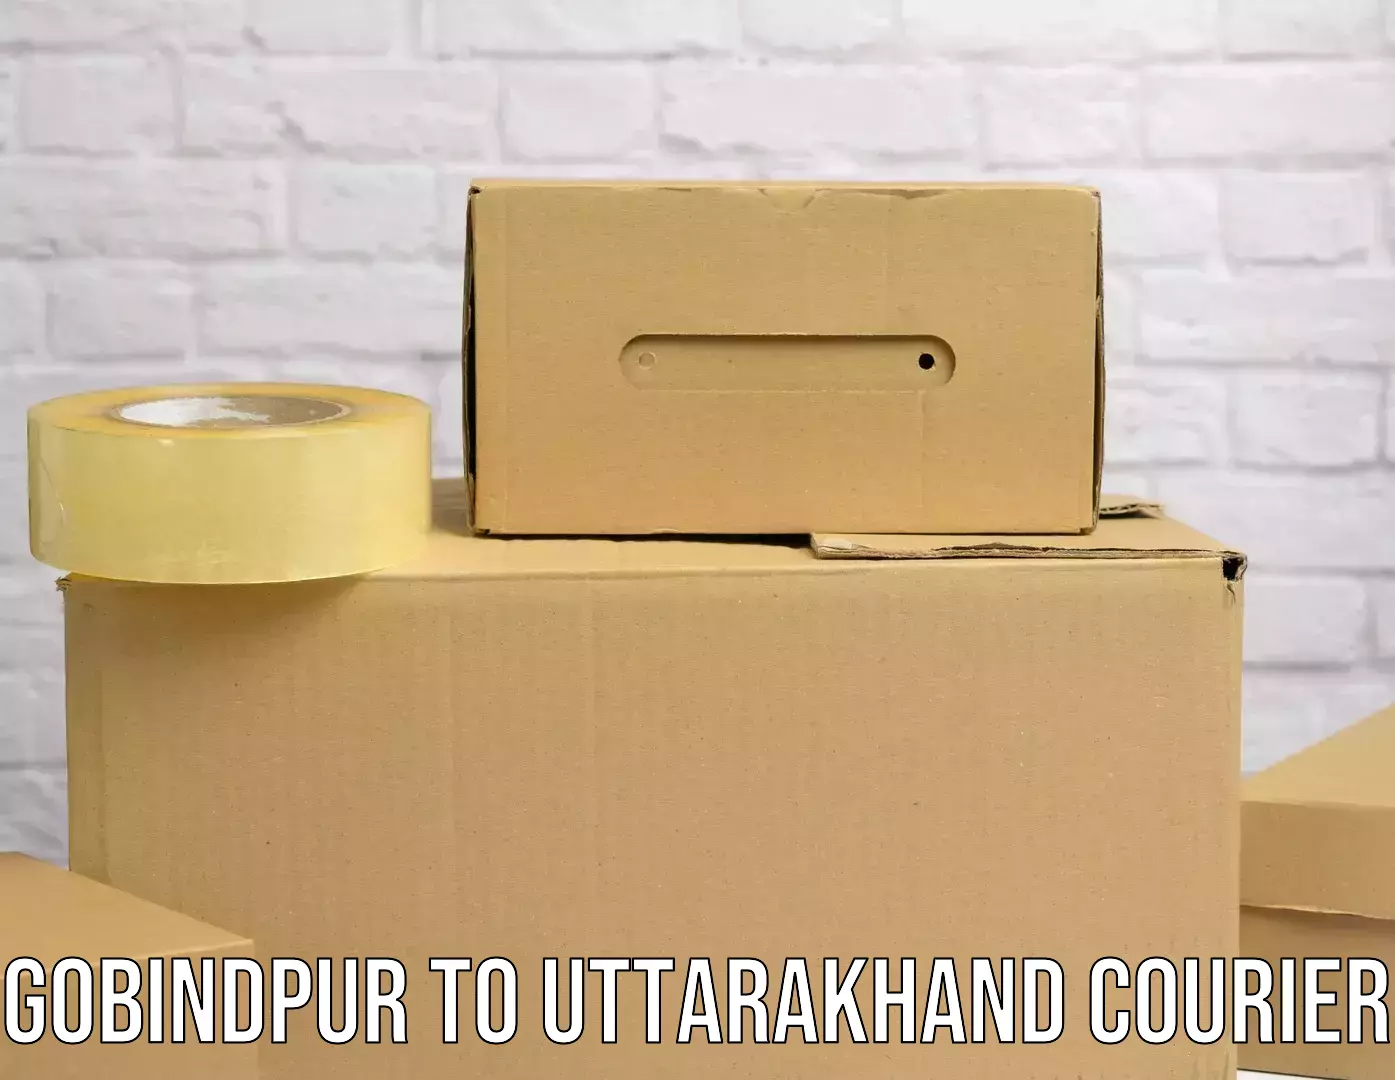 Courier app in Gobindpur to Uttarakhand